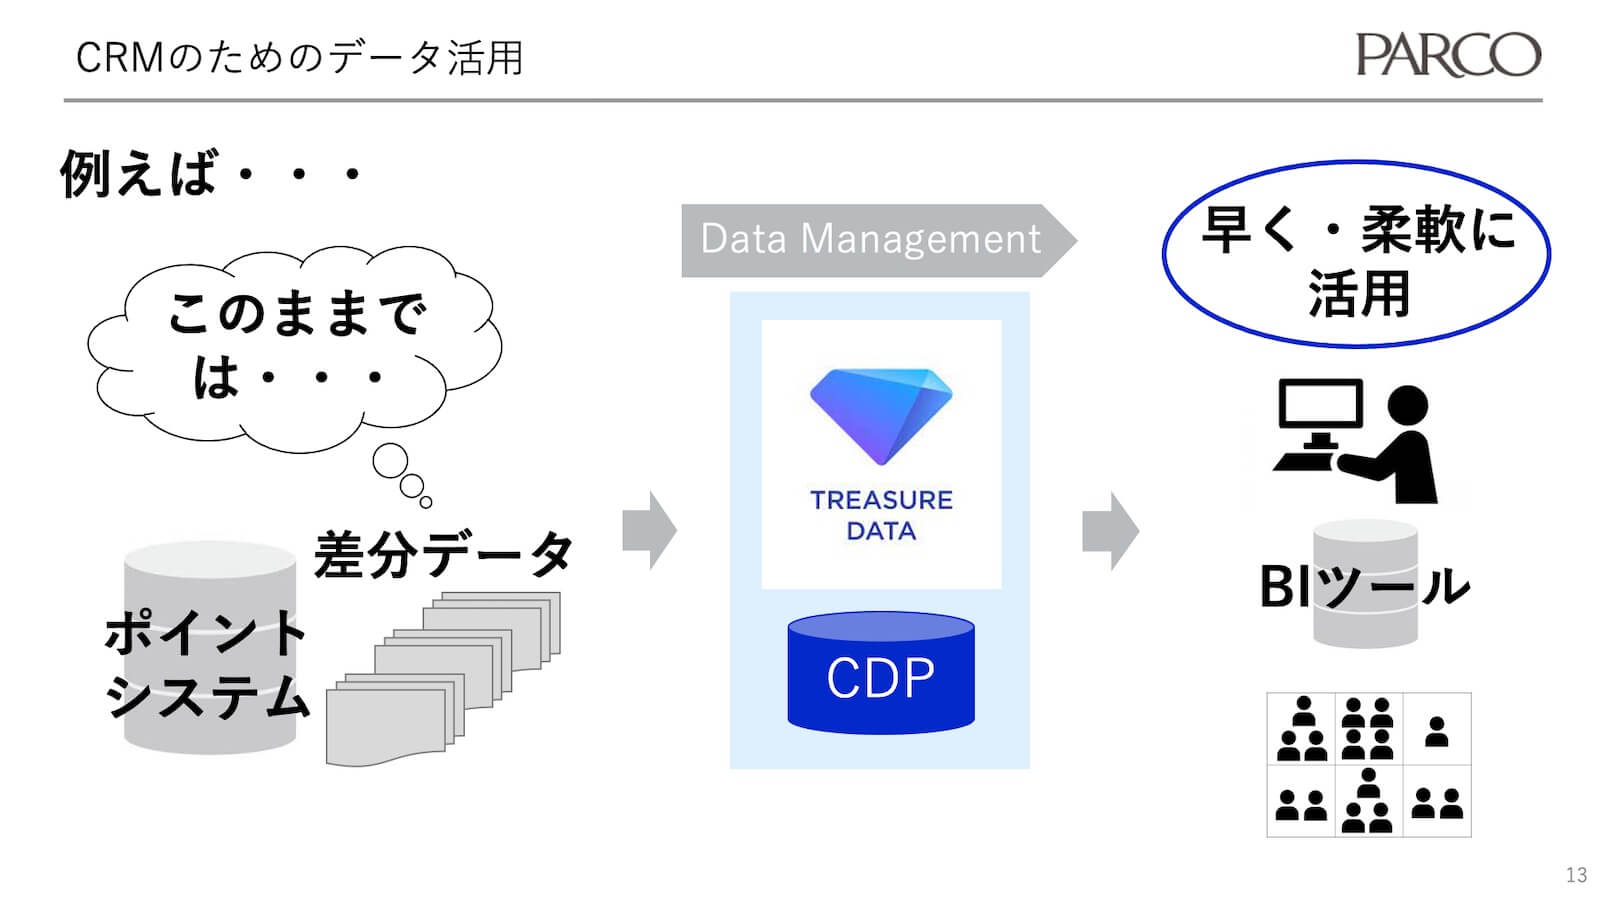 CRMのためのデータ活用-パルコがCDPを使う2つの理由-1